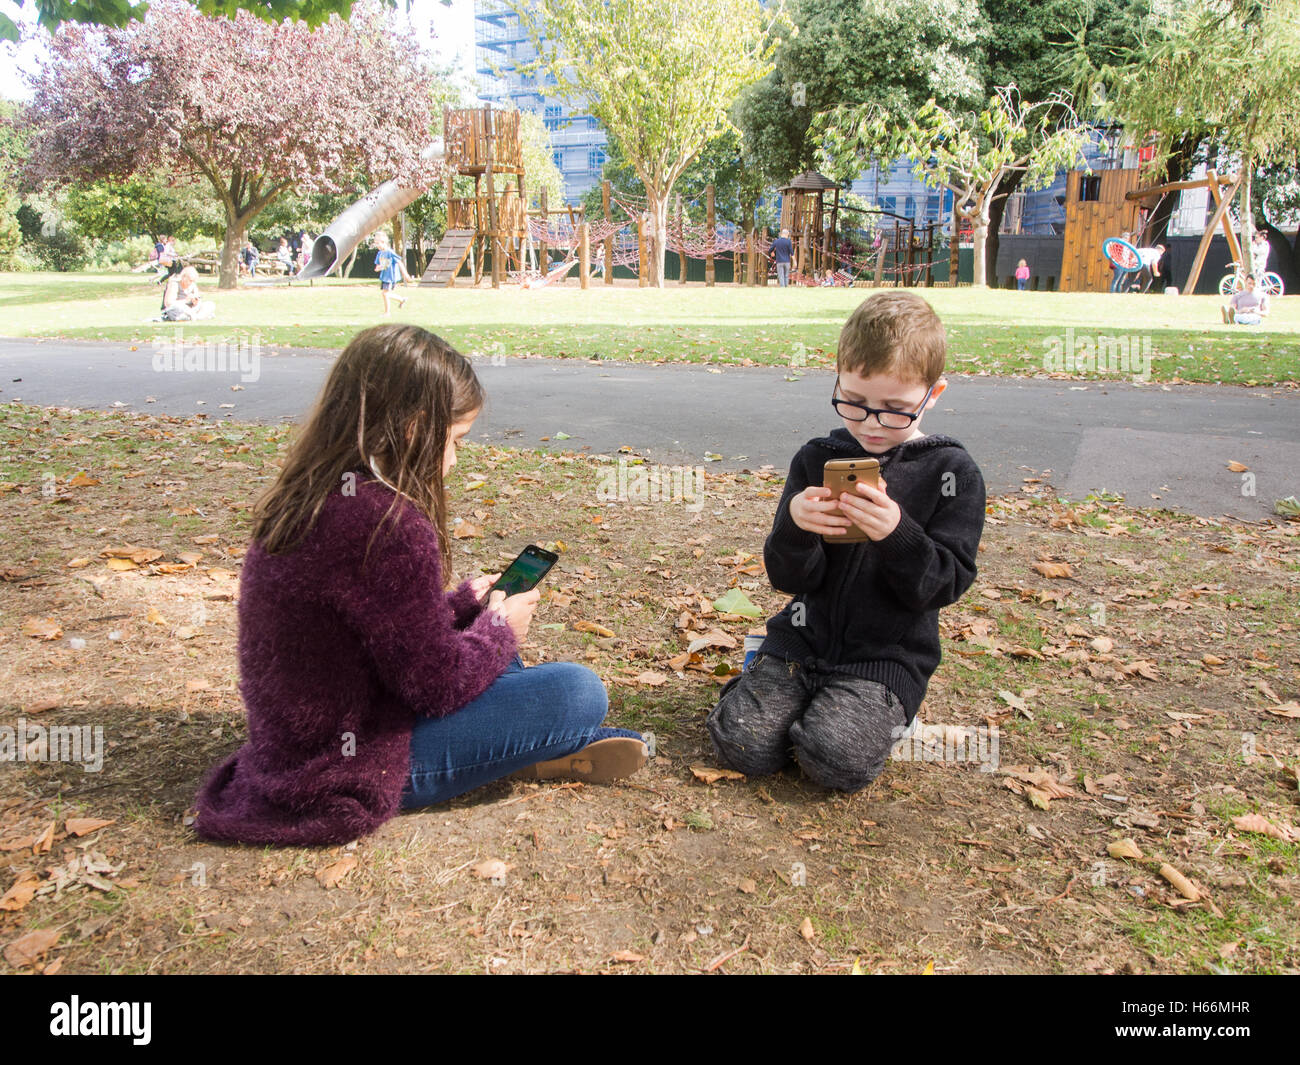 Deux enfants jouent à des jeux sur téléphones mobiles dans un parc public avec une aire de jeux derrière eux. Banque D'Images